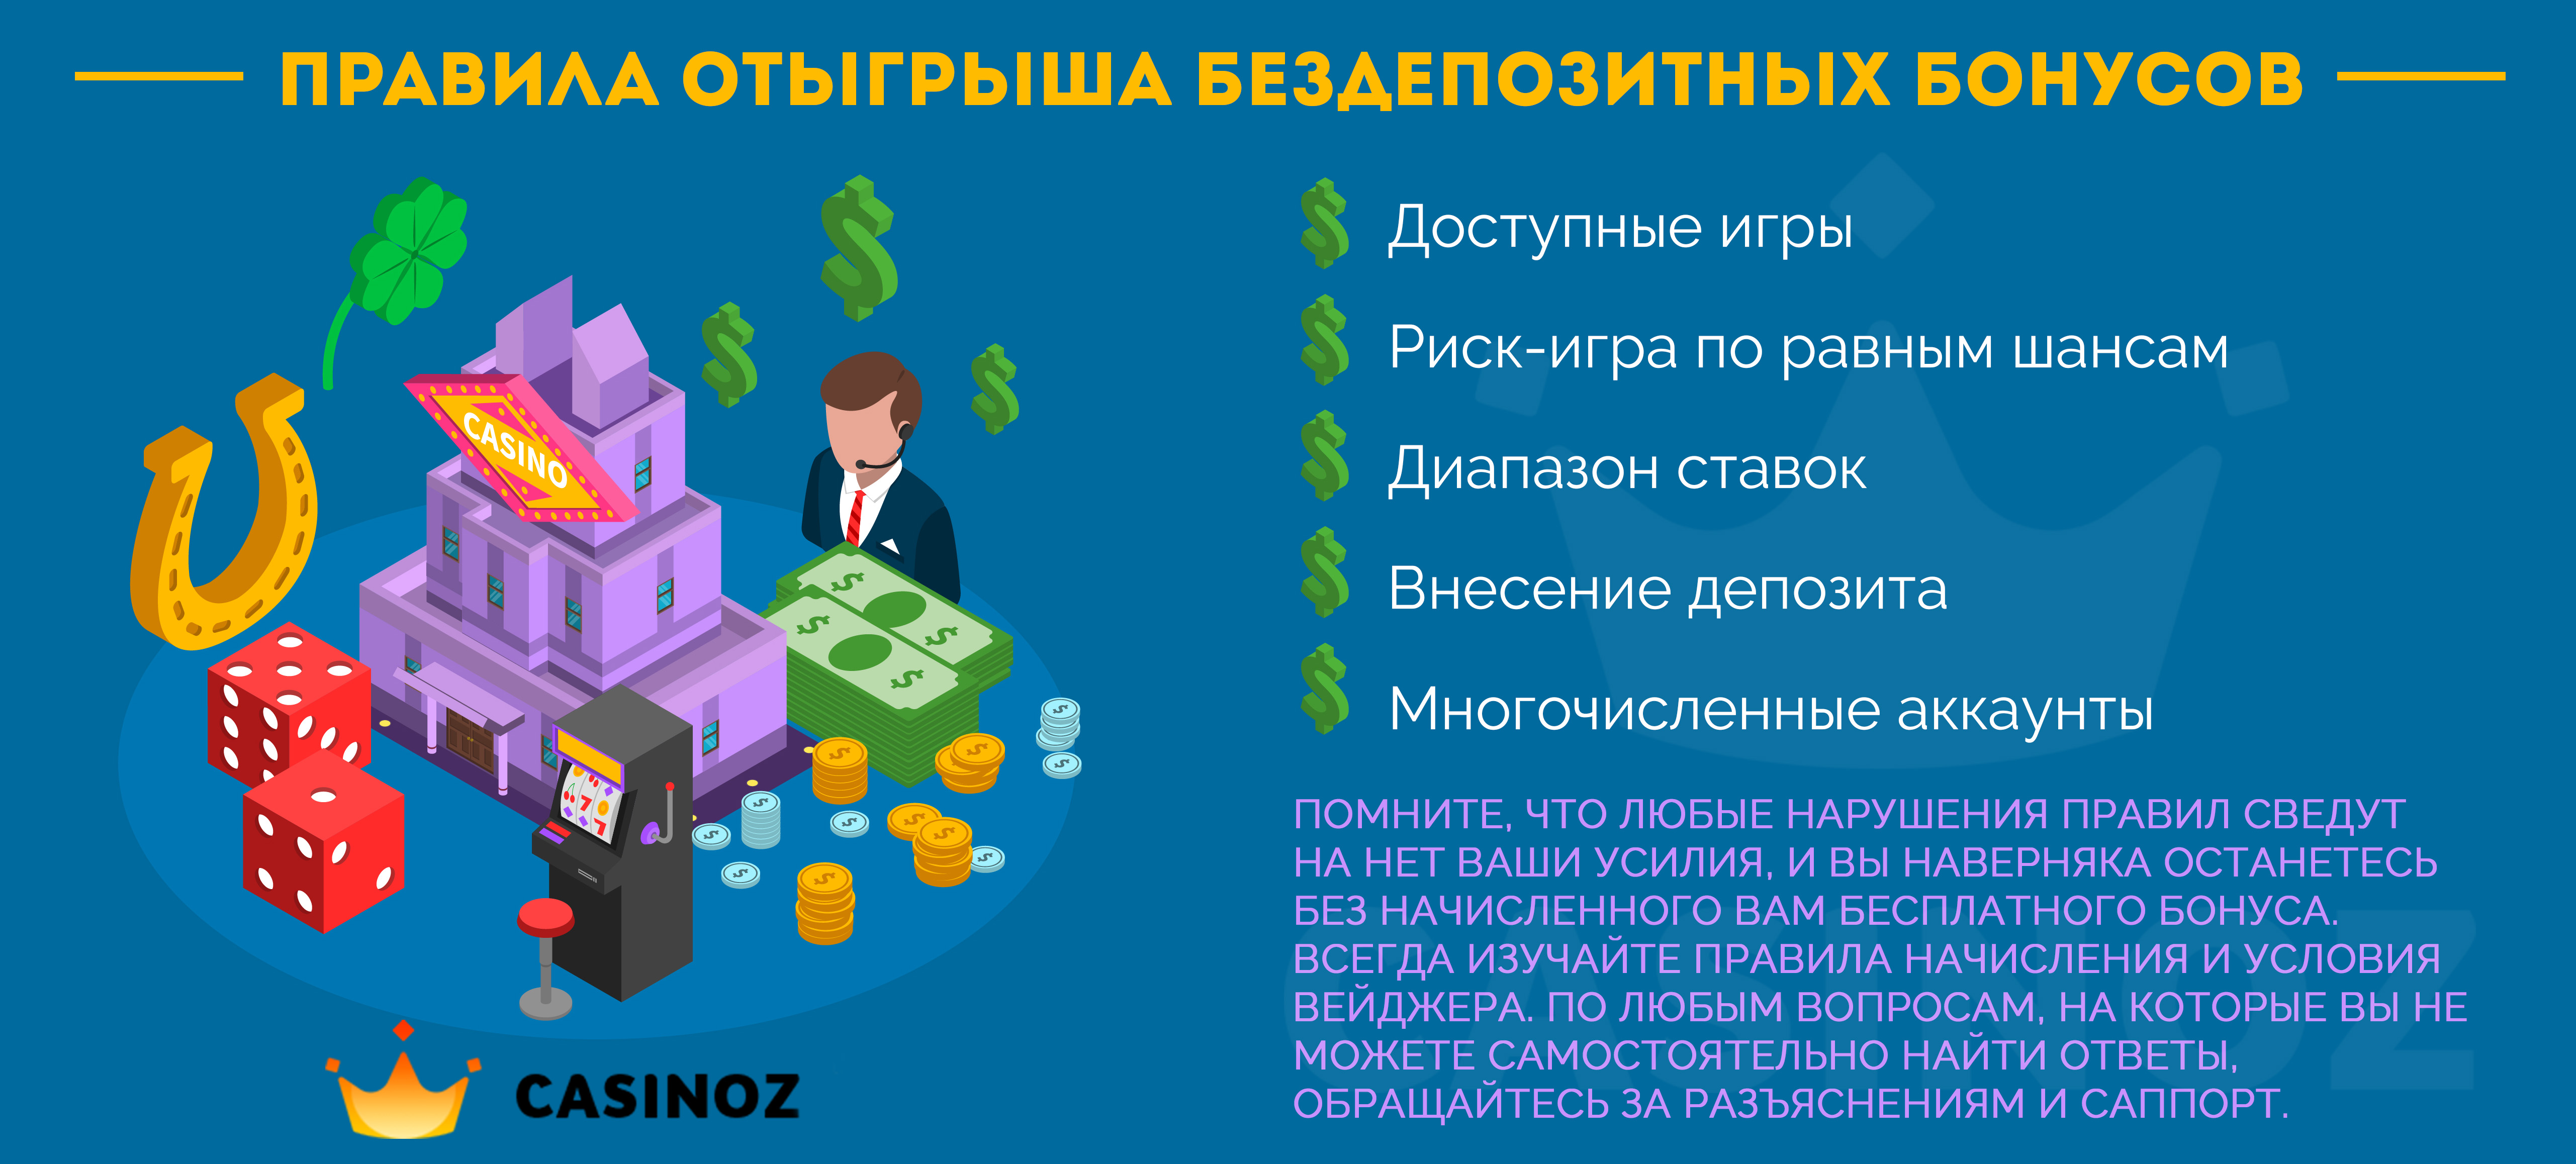 Онлайн казино с бесплатным депозитом за регистрацию адмирал х 1000 рублей официальный зеркало